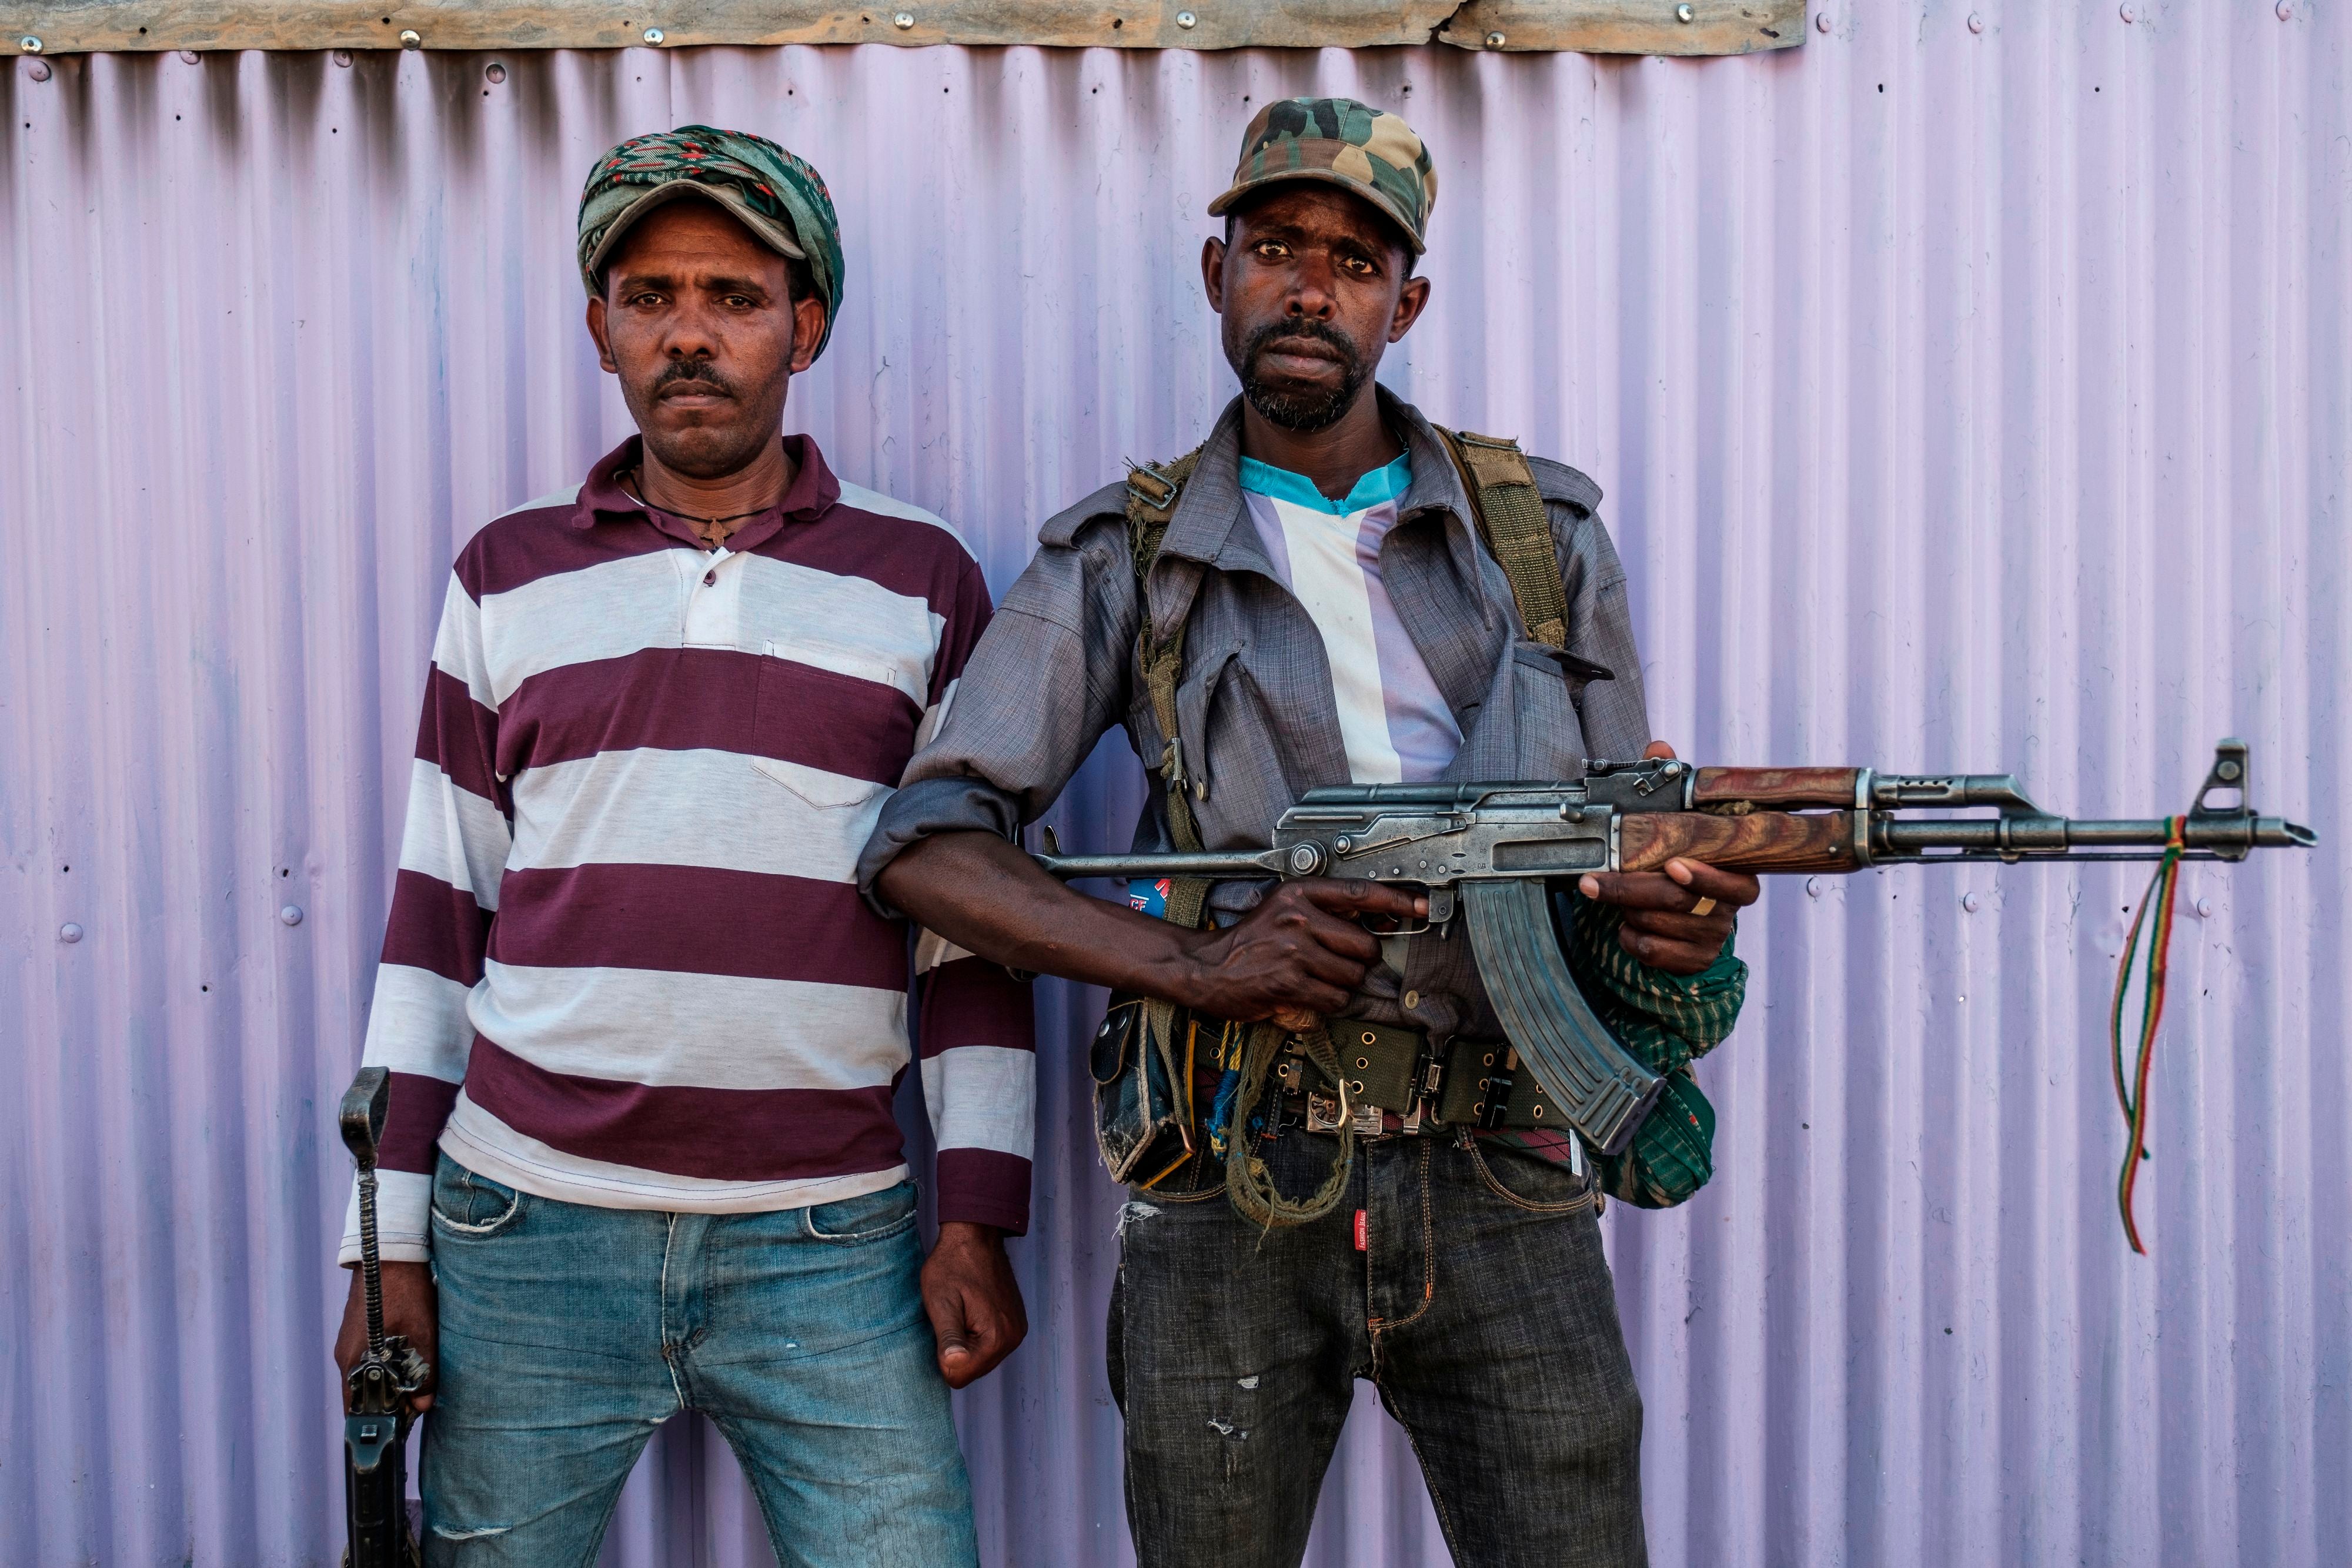 Dos miembros de la milicia de Amhara posan para una foto, en Mai Kadra, Etiopía, el 21 de noviembre de 2020. - Amharas y Tigrayans eran vecinos incómodos antes de los actuales combates, con la tensión sobre la tierra que provocó violentos enfrentamientos. El hecho de que Mai-Kadra esté siendo dirigido ahora, al menos temporalmente, por Amharas proporciona alivio a los Amharas, incluso mientras profundiza los temores de los tigres de la ocupación.